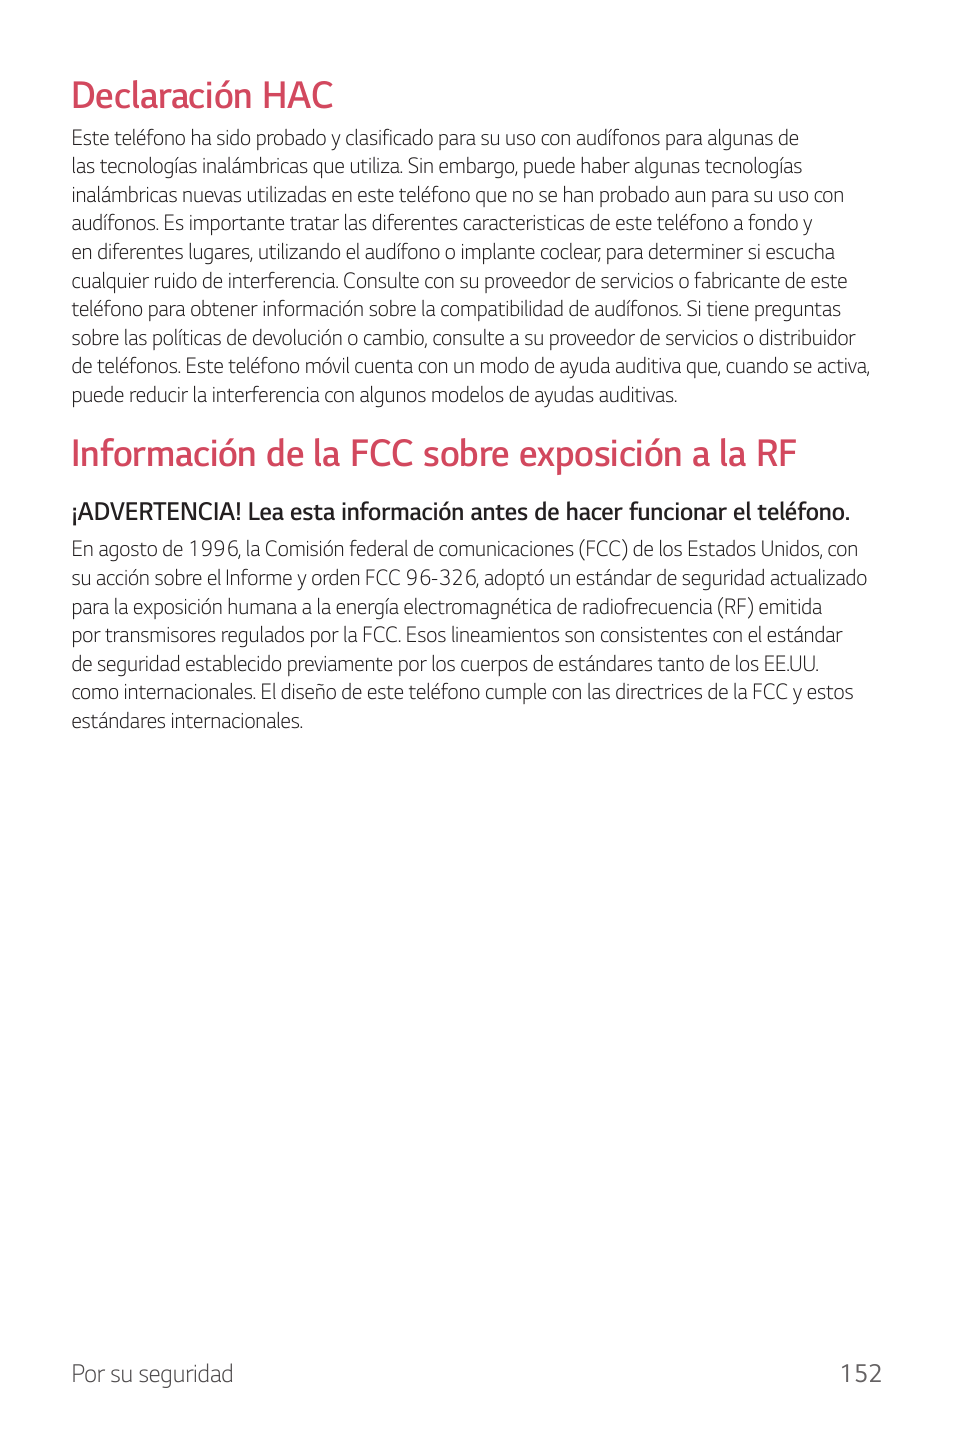 Declaración hac, Información de la fcc sobre exposición a la rf | LG G6 H872 Manual del usuario | Página 153 / 185